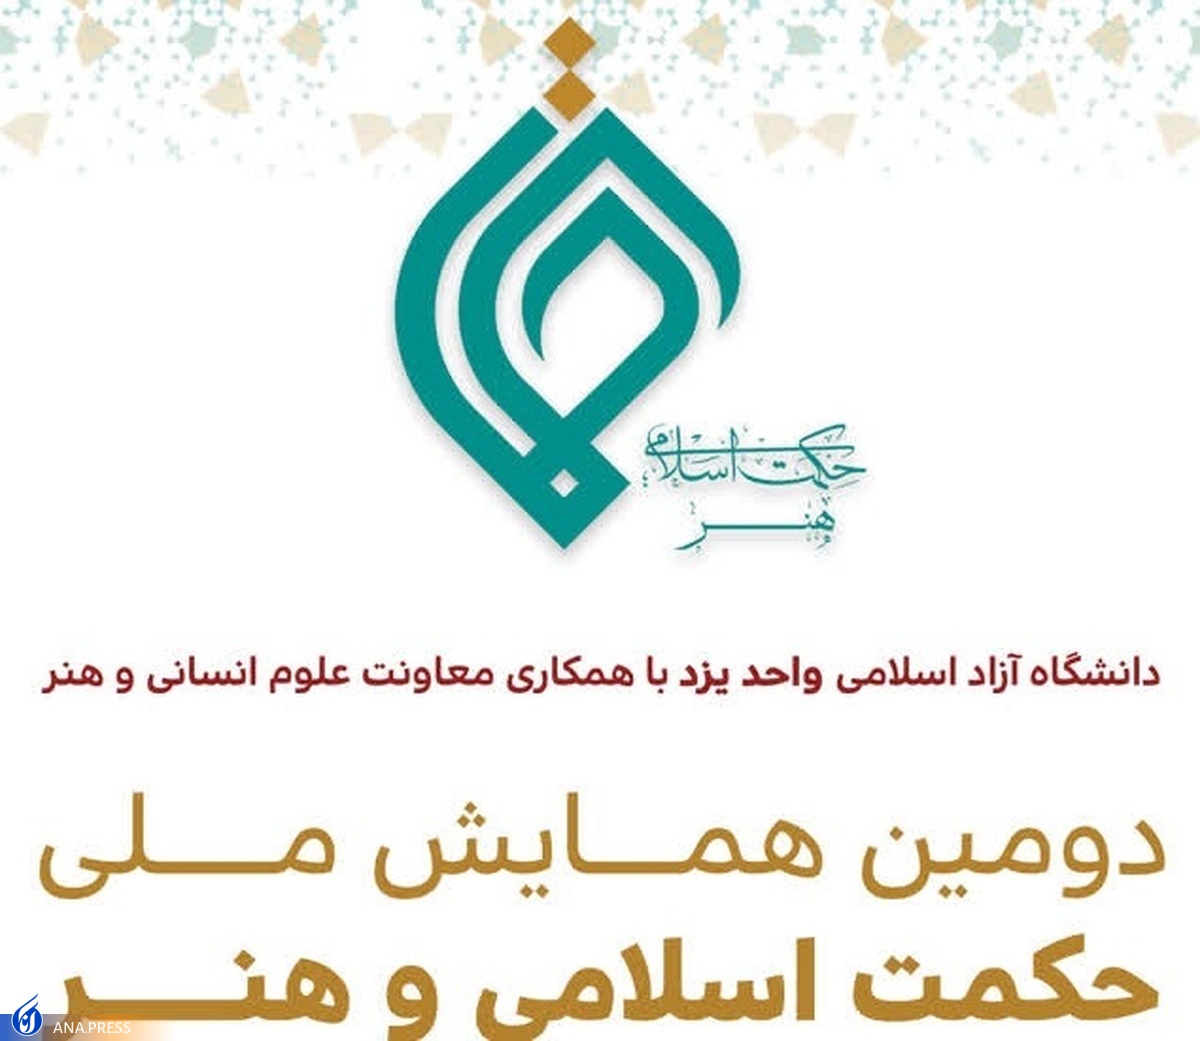 یزد میزبان دومین همایش ملی حکمت اسلامی و هنر